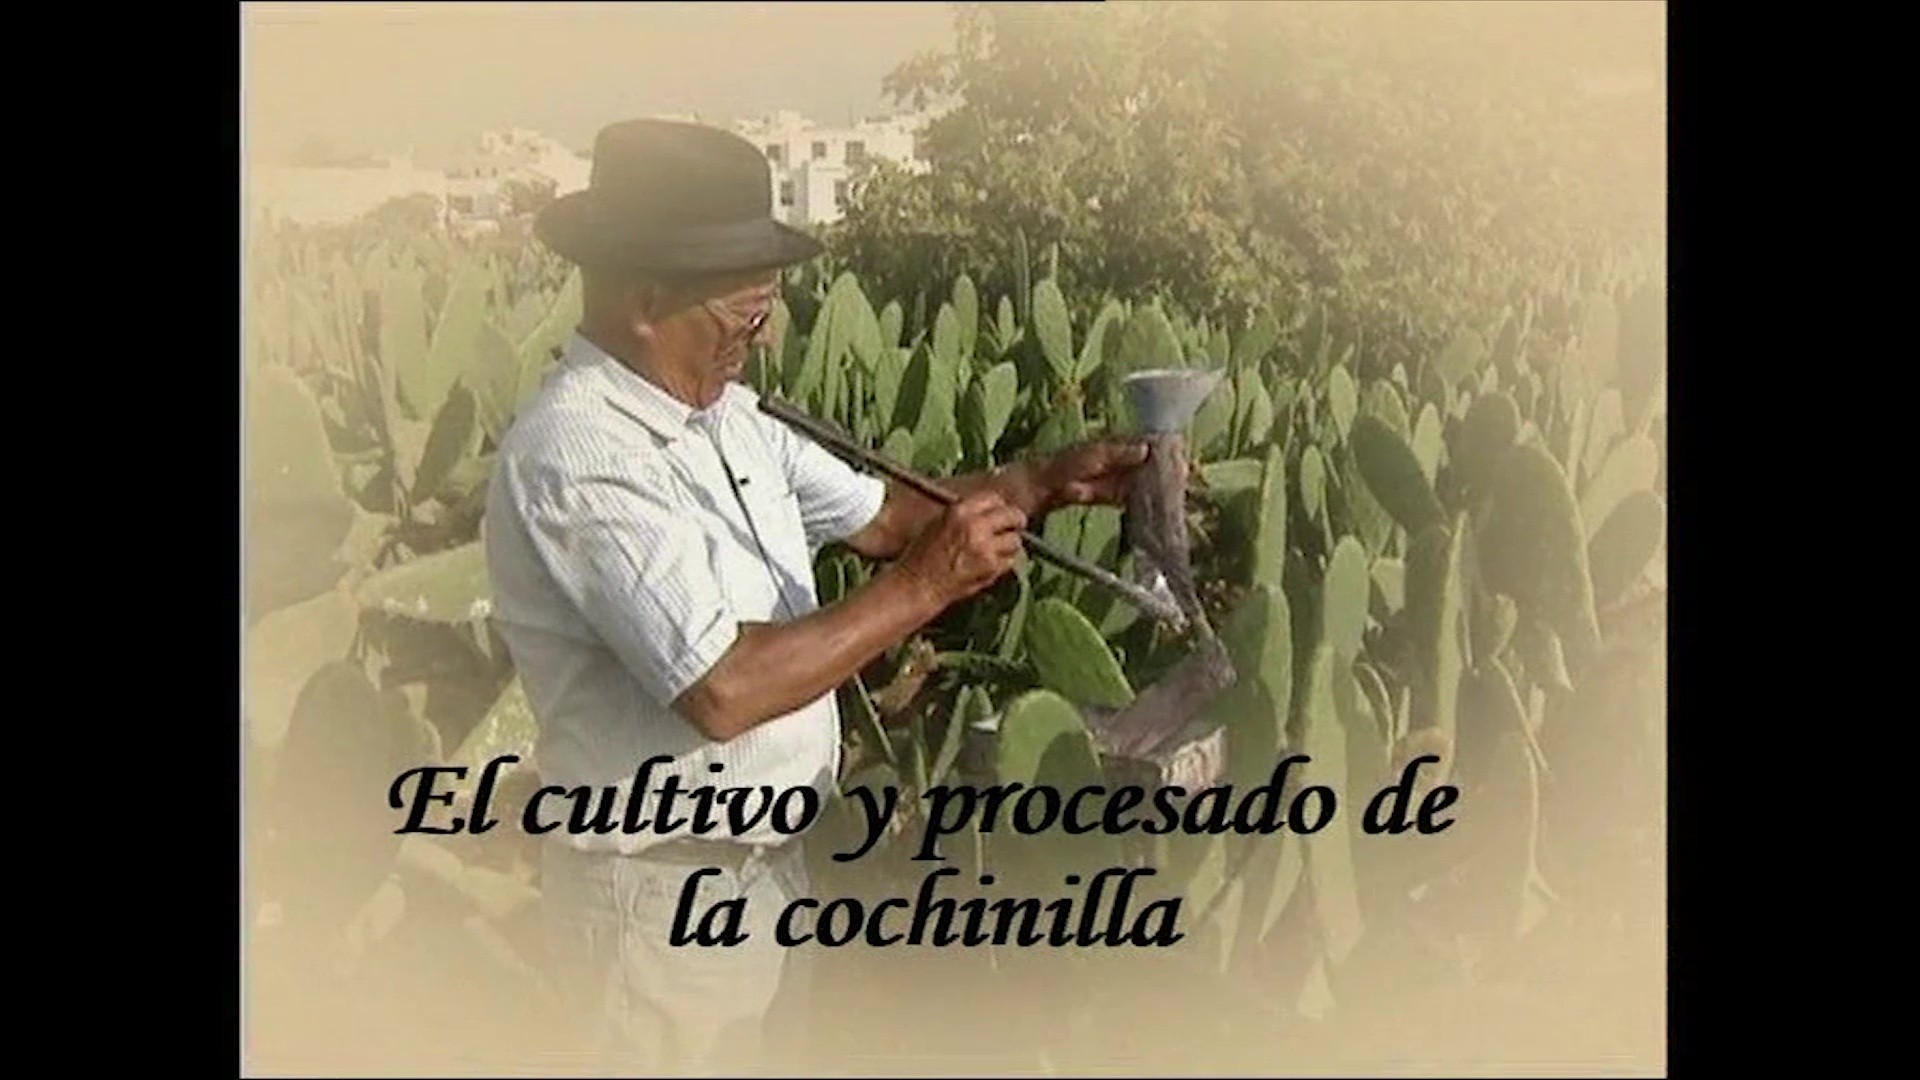 El cultivo y procesado de la cochinilla (2006)